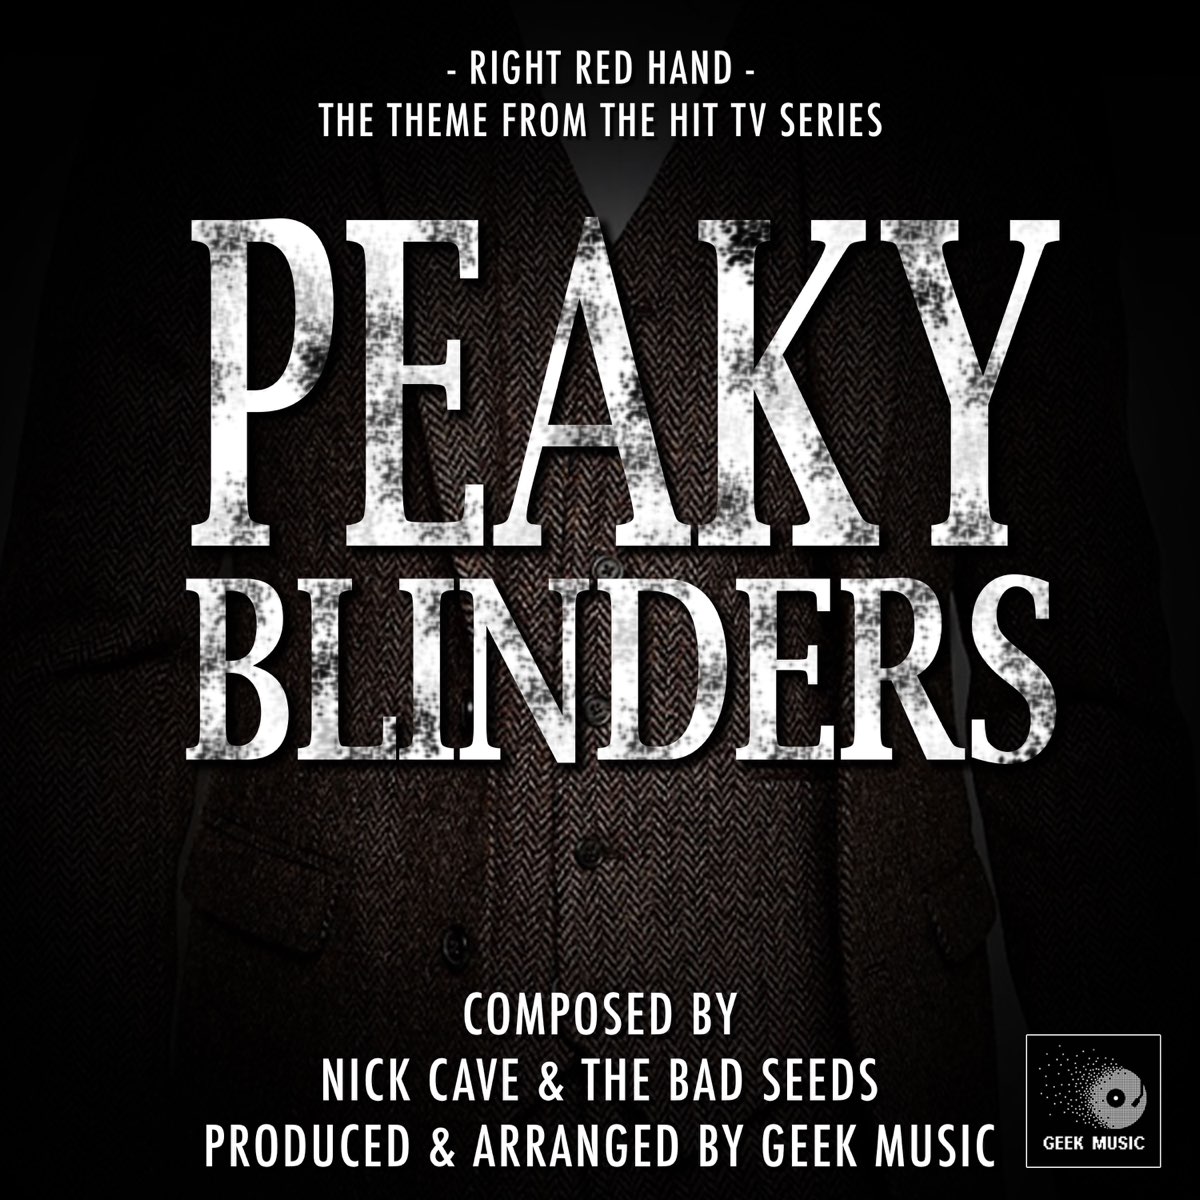 Trilha sonora de Peaky Blinders: as melhores músicas da série 